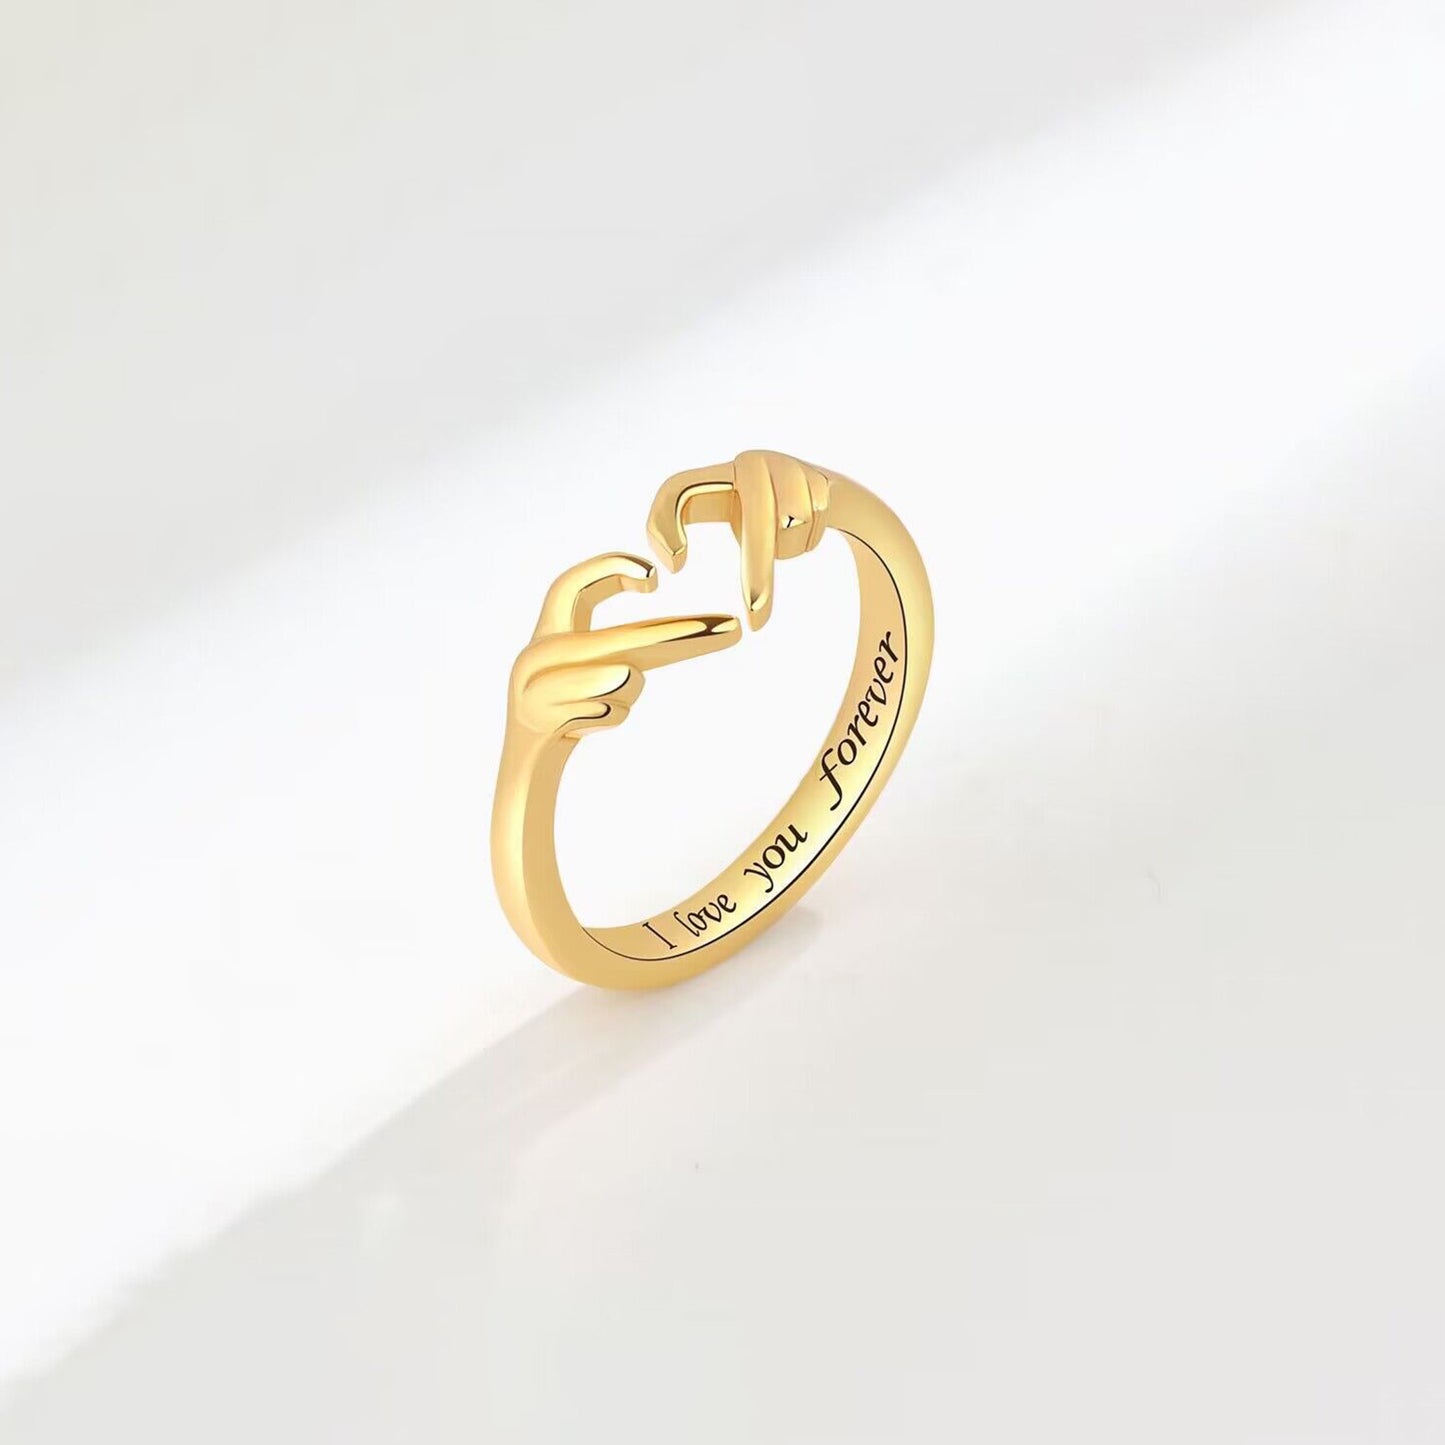 Handherzförmiger offener Ring aus 925er Sterlingsilber